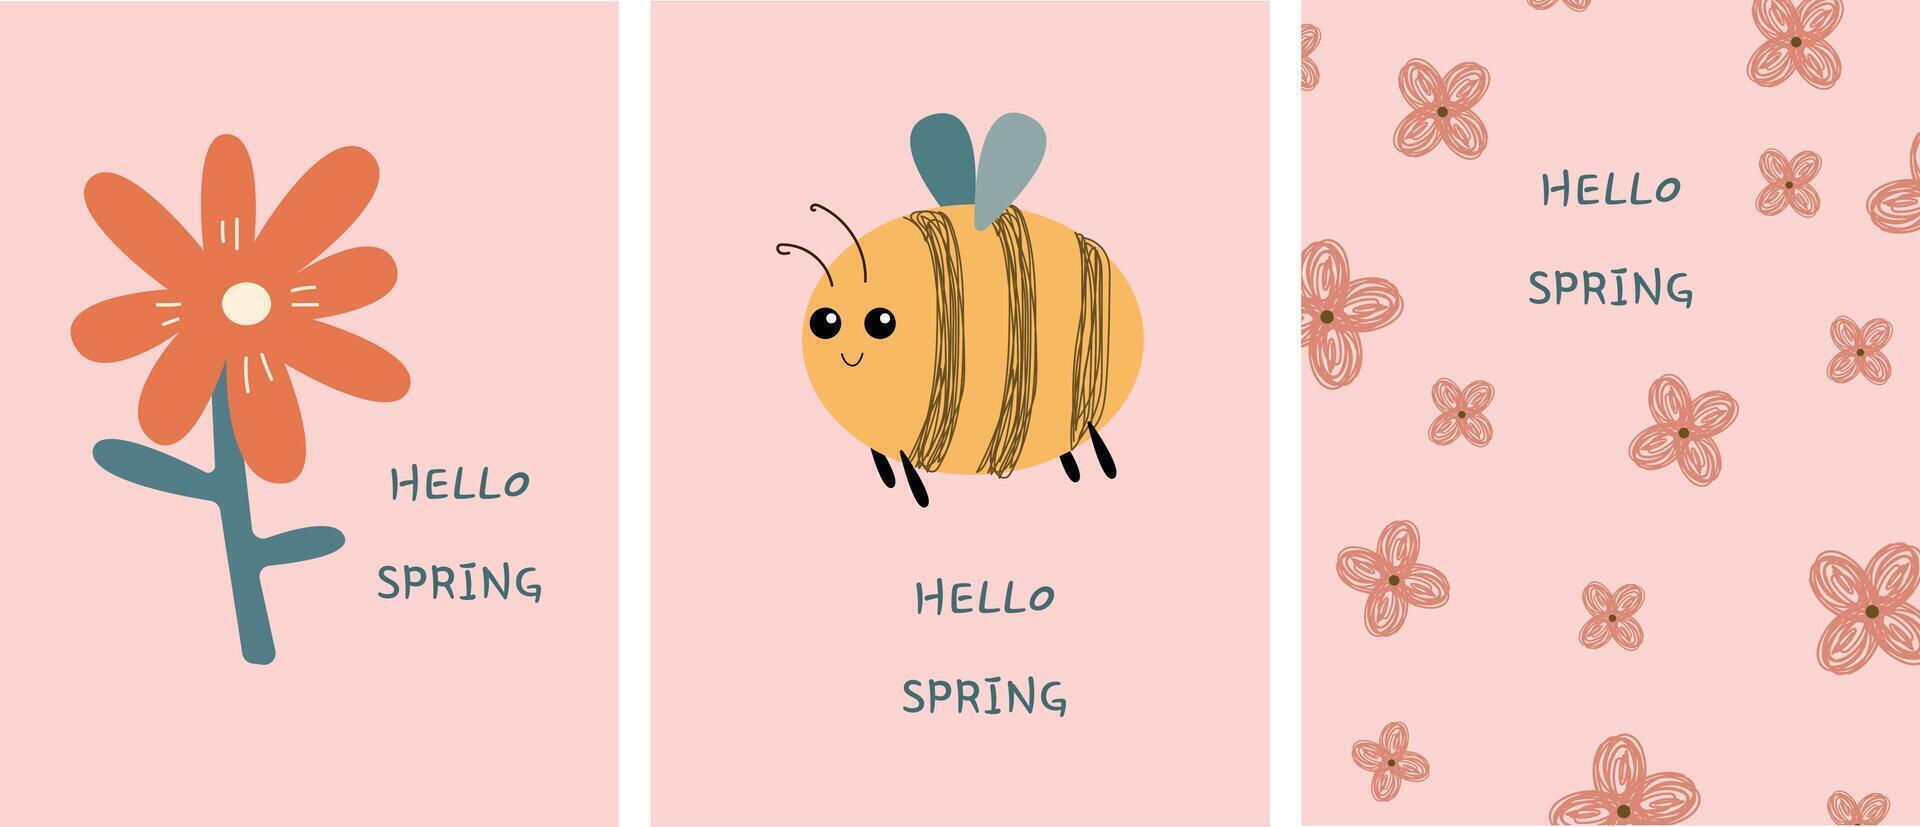 ensemble de printemps carte postale. kawaii insectes et fleurs. vecteur illustration